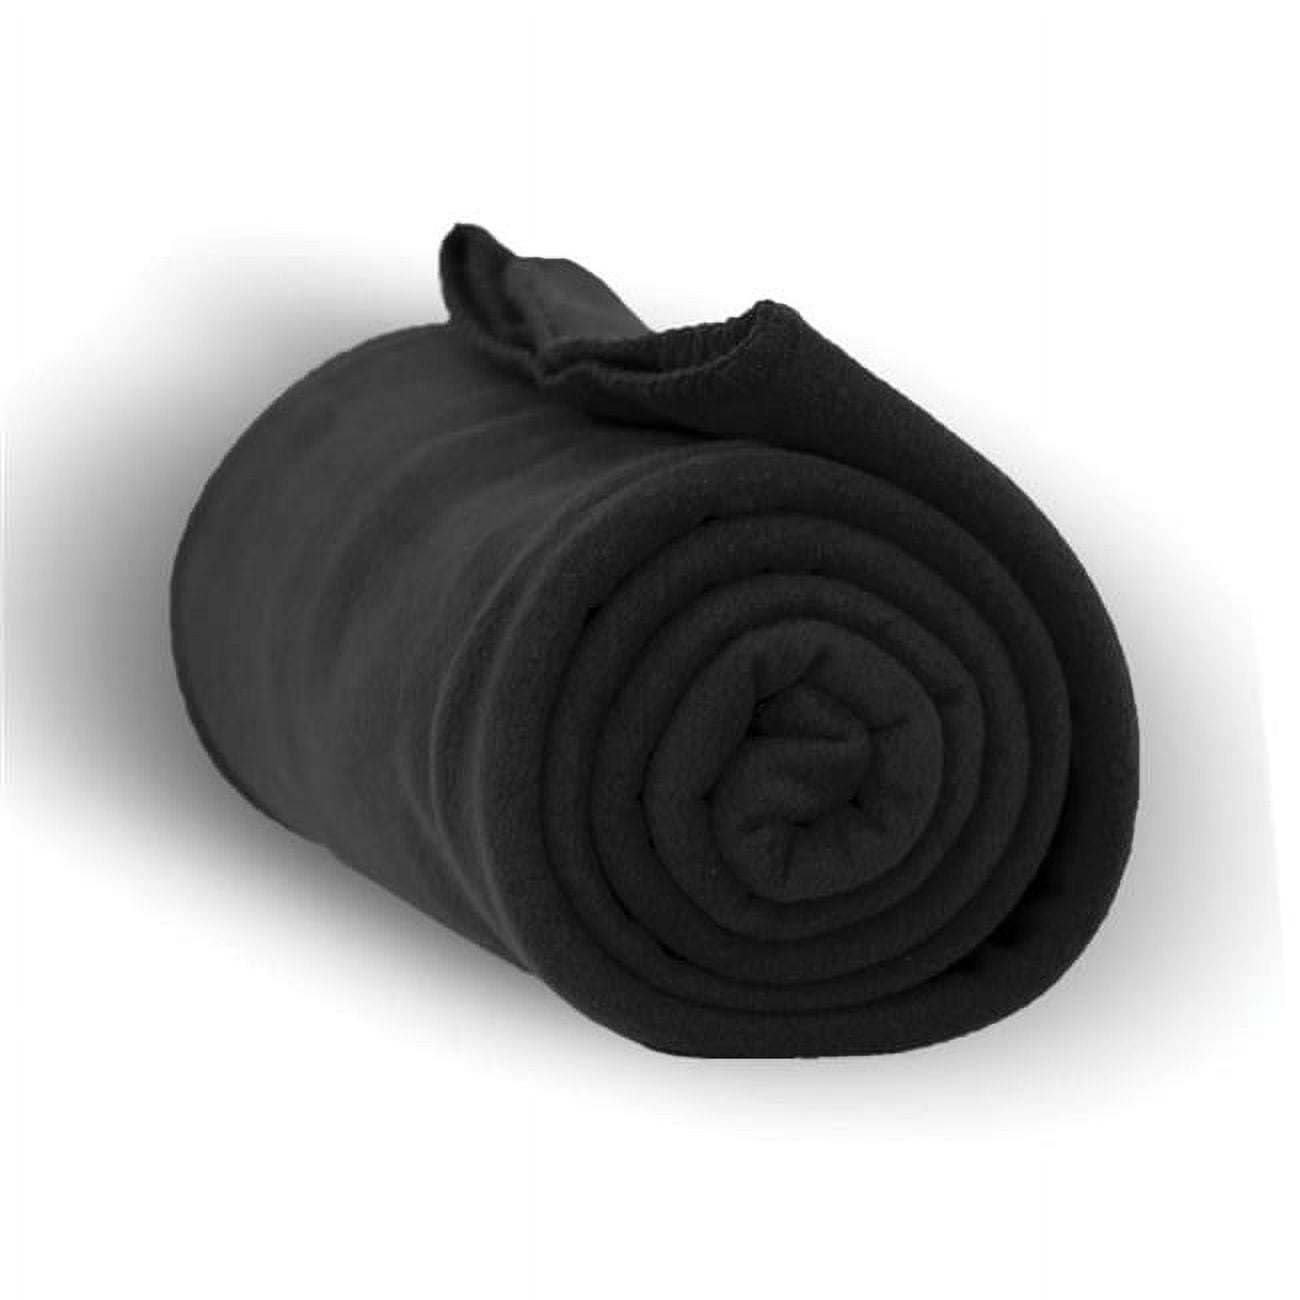 50 X 60 In. Heavy Weight Fleece Blanket Throw, Black - Case Of 24